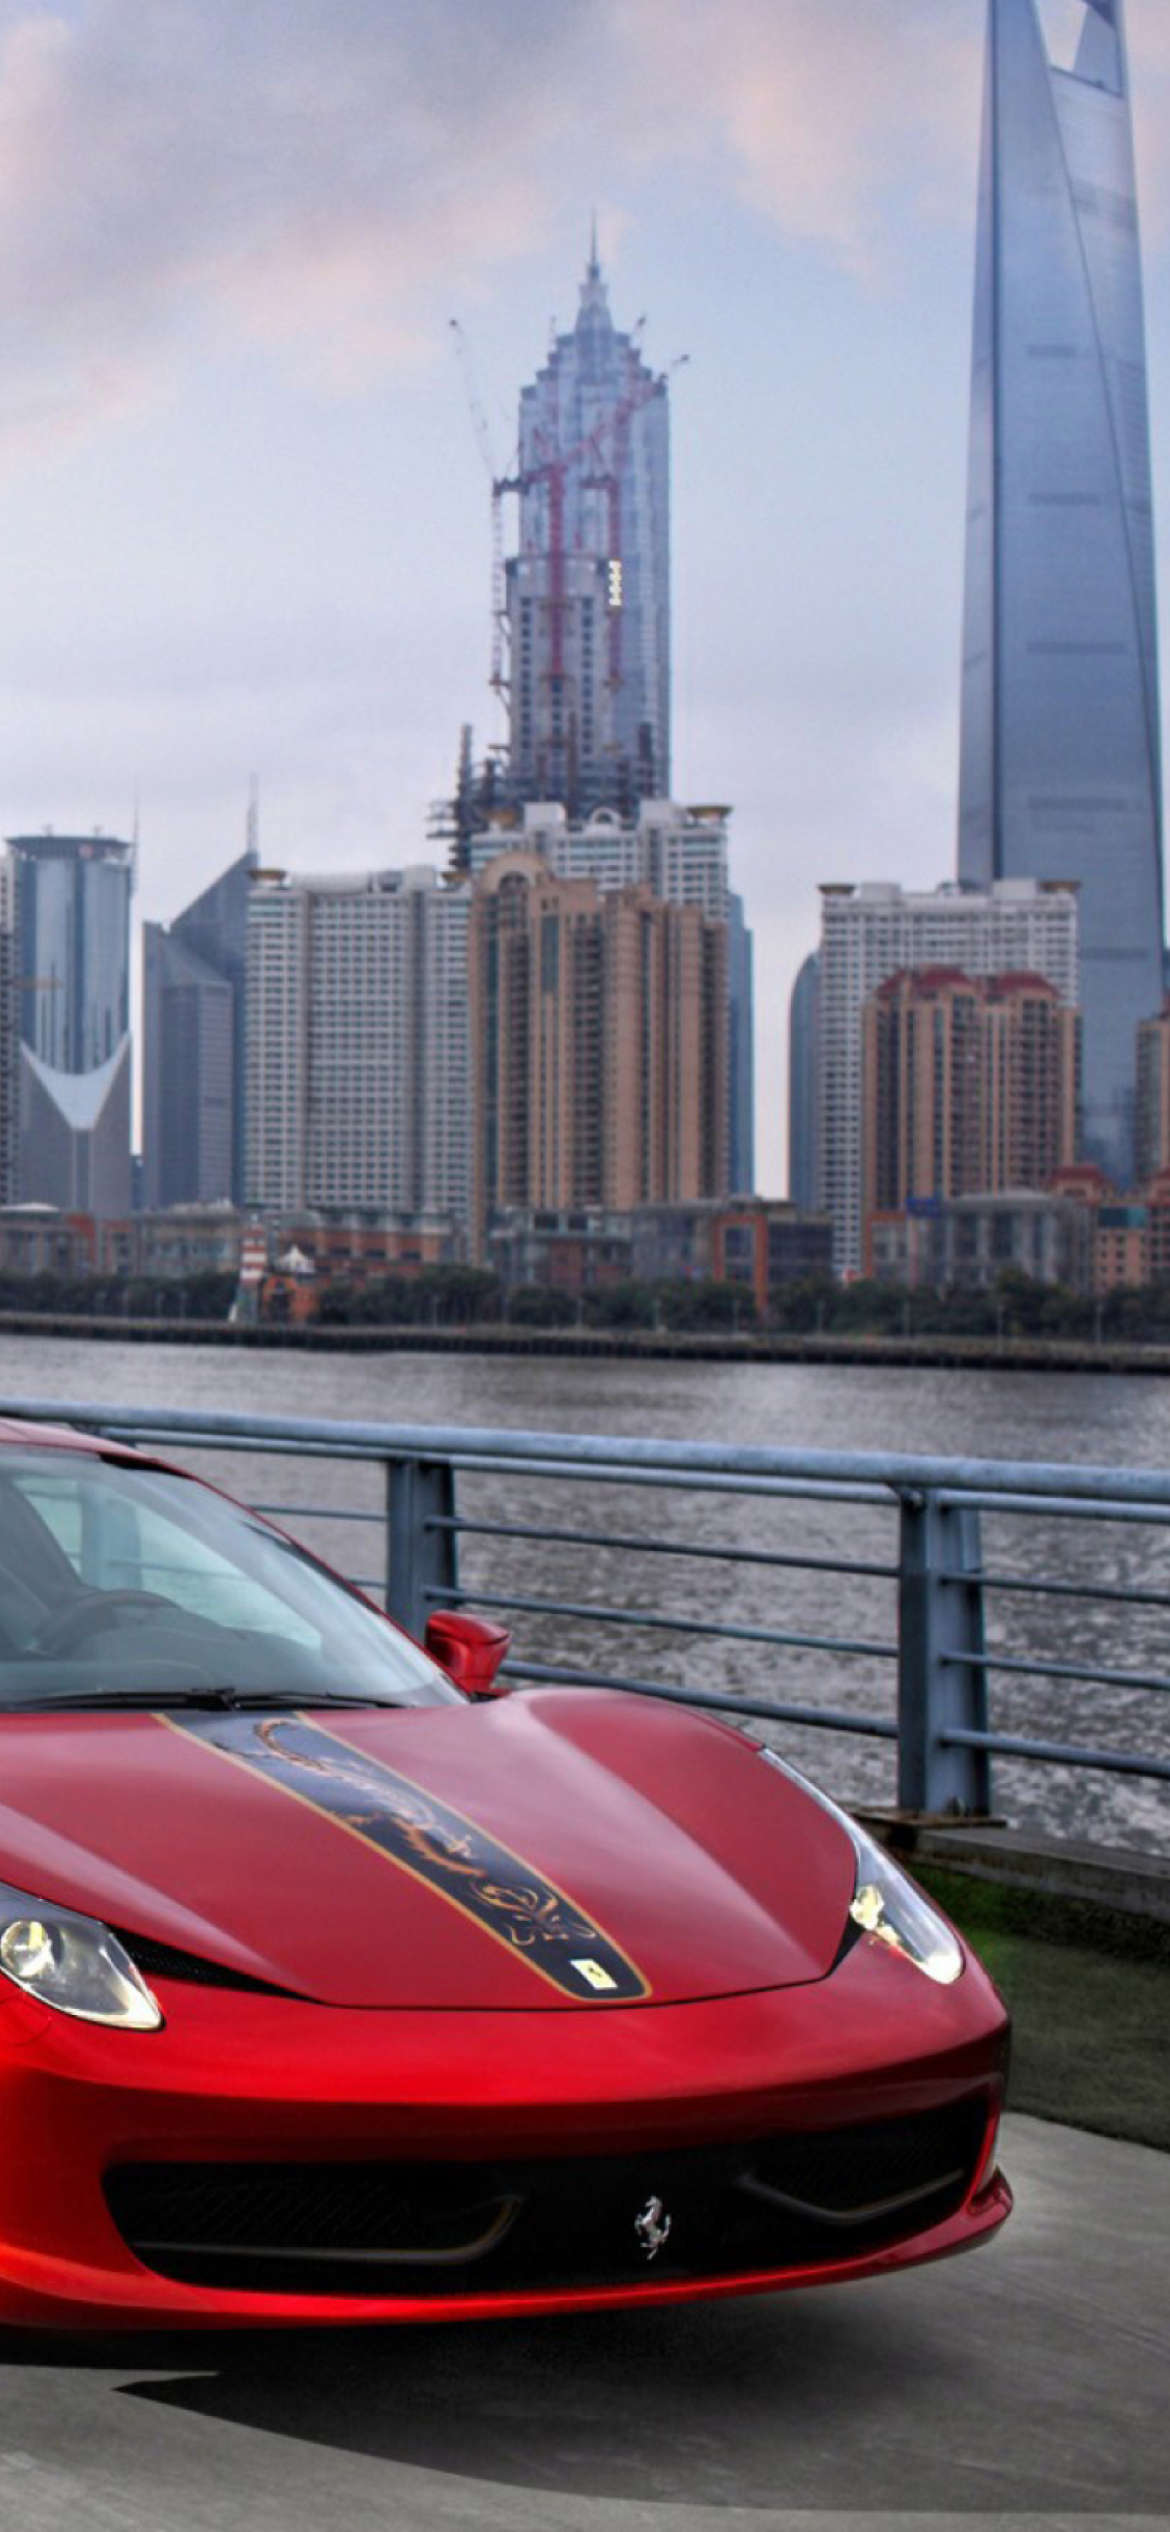 Das Ferrari In The City Wallpaper 1170x2532